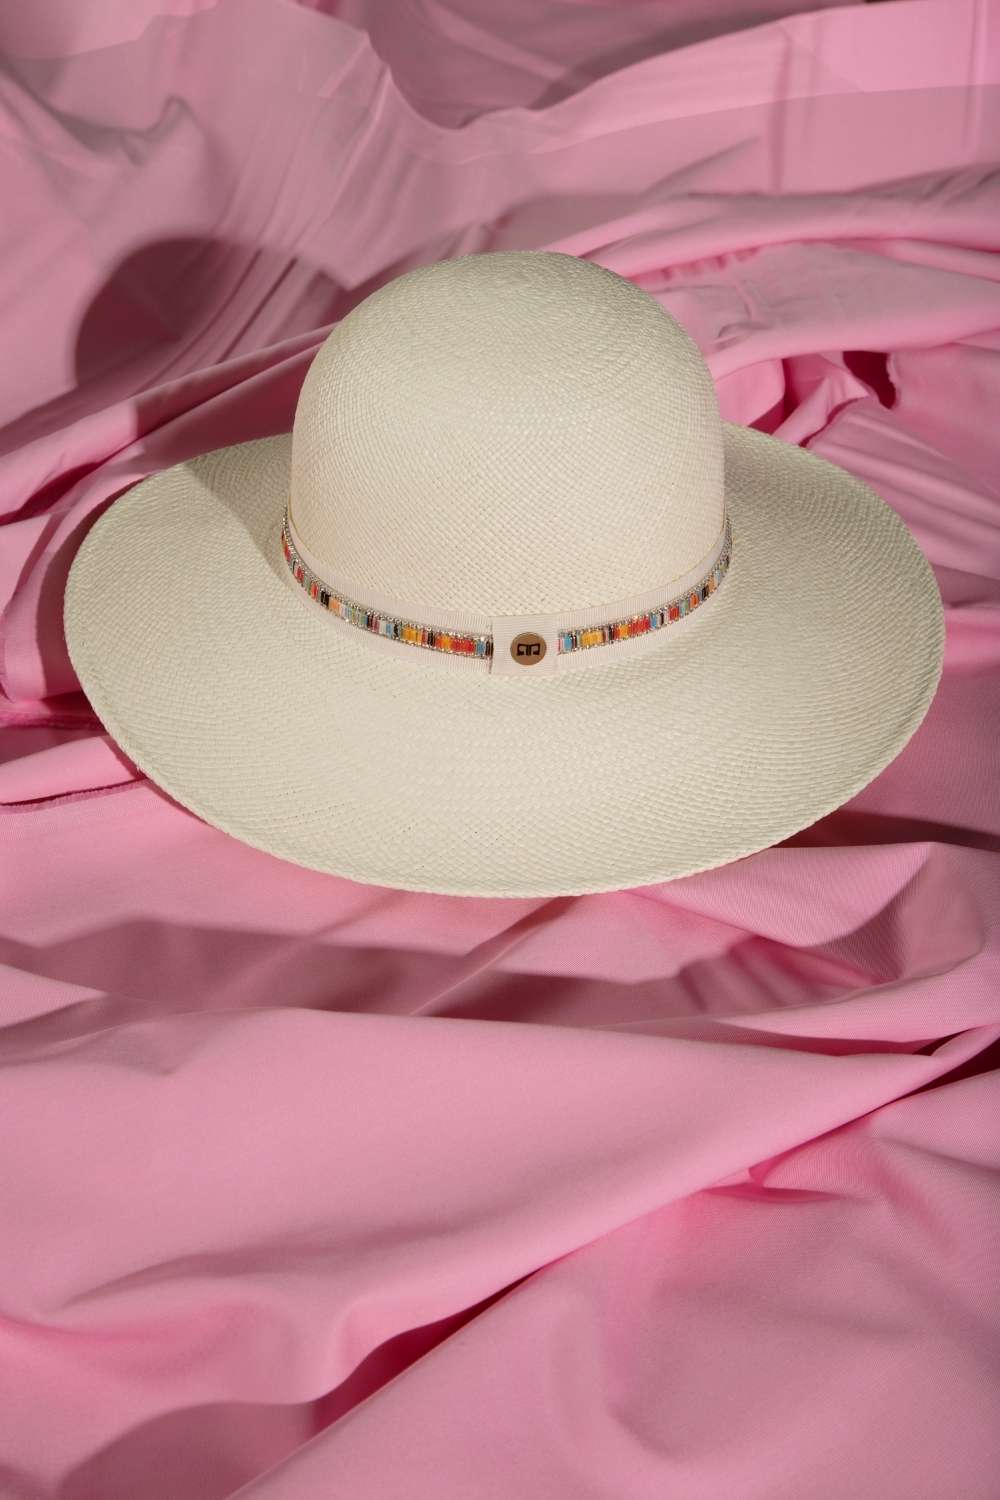 still life Cappello bianco panama a tesa larga da donna per l'estate. Modello estivo in paglia Panama originale Ecuador fatto a mano, disponibile in colori bianco, rosa, avana.